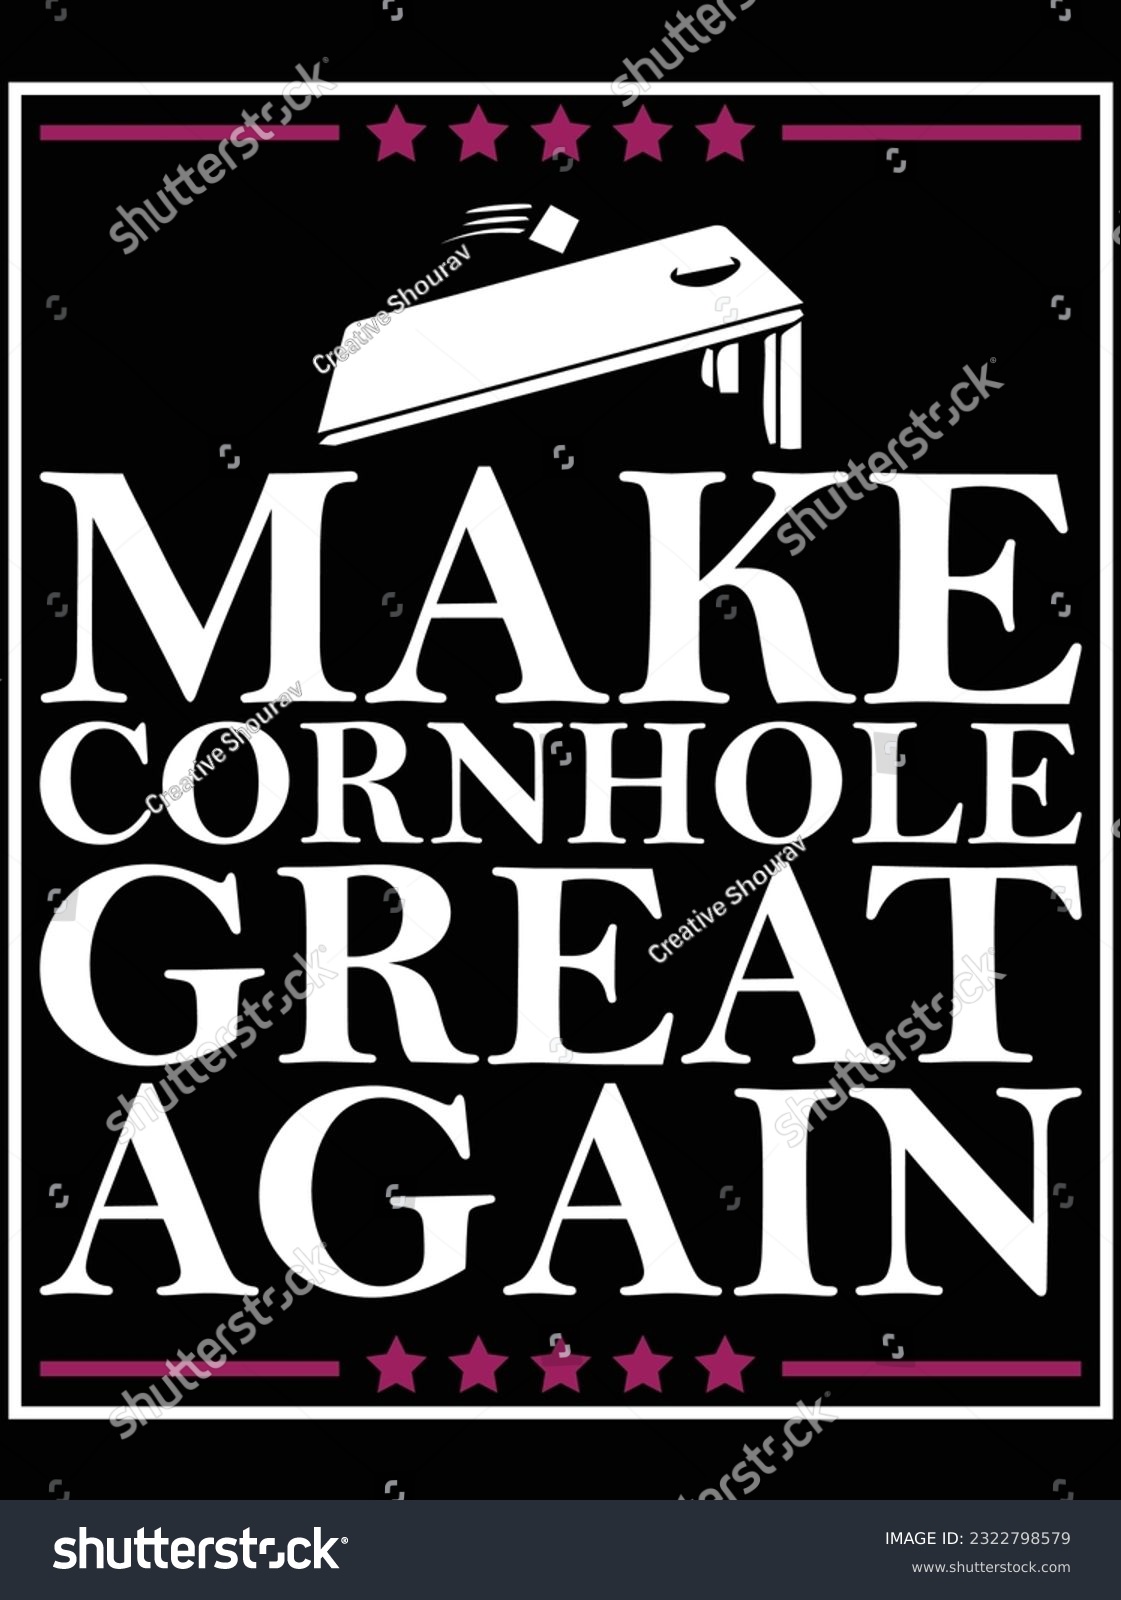 SVG of Make cornhole great again vector art design, eps file. design file for t-shirt. SVG, EPS cuttable design file svg